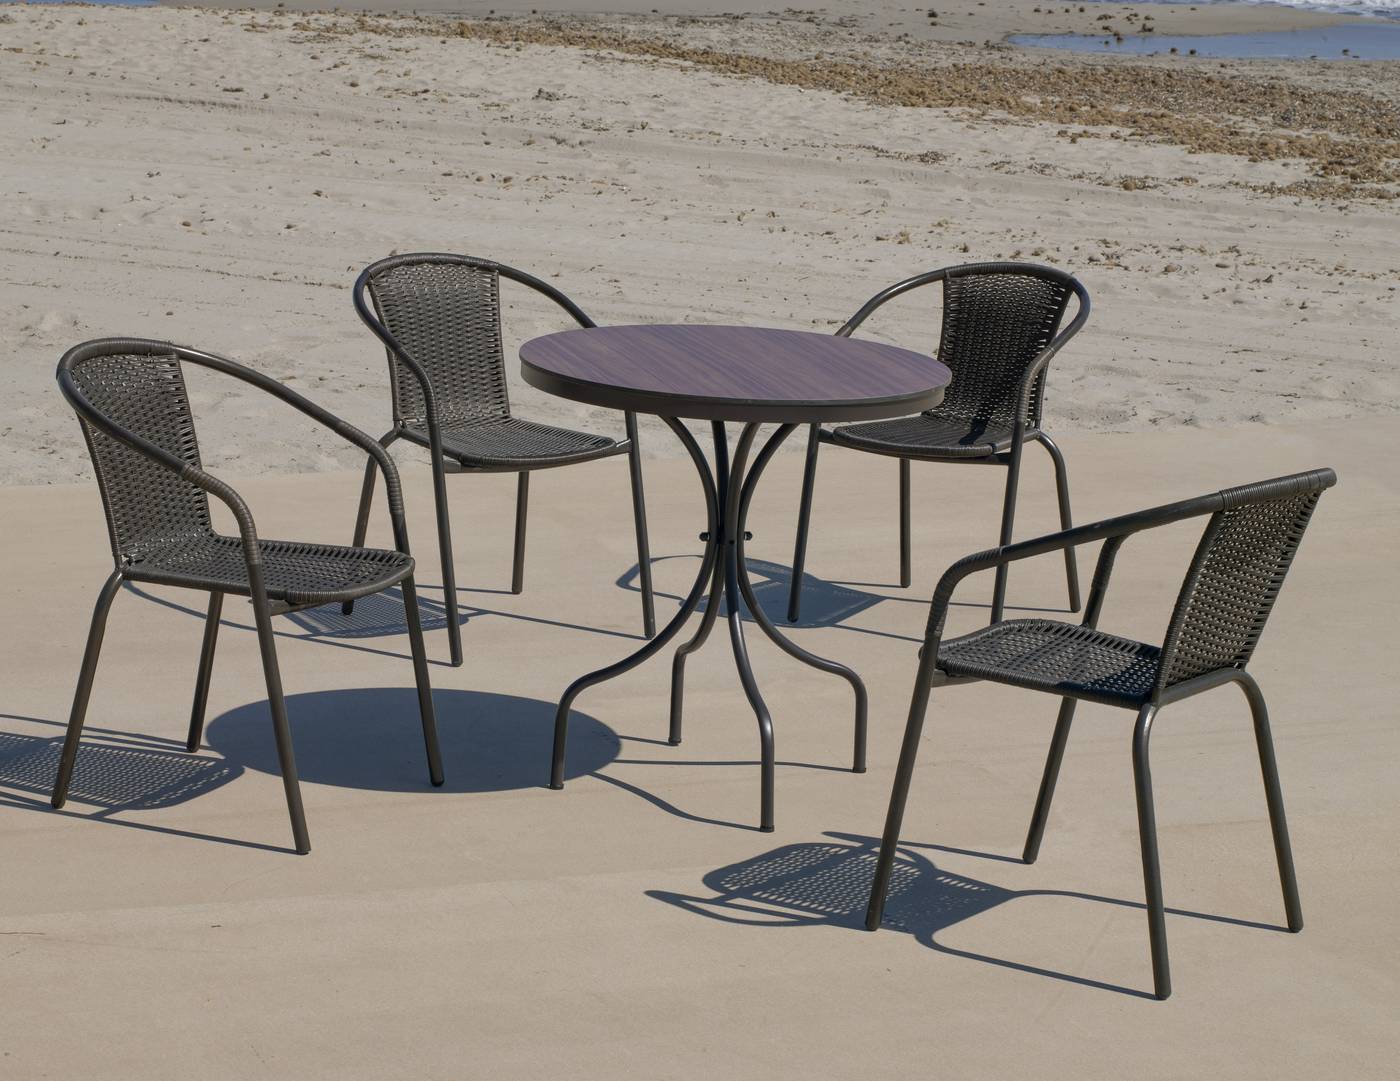 Conjunto color marrón: Mesa redonda de aluminio con tablero HPL de 75 cm + 4 sillones de acero y wicker.